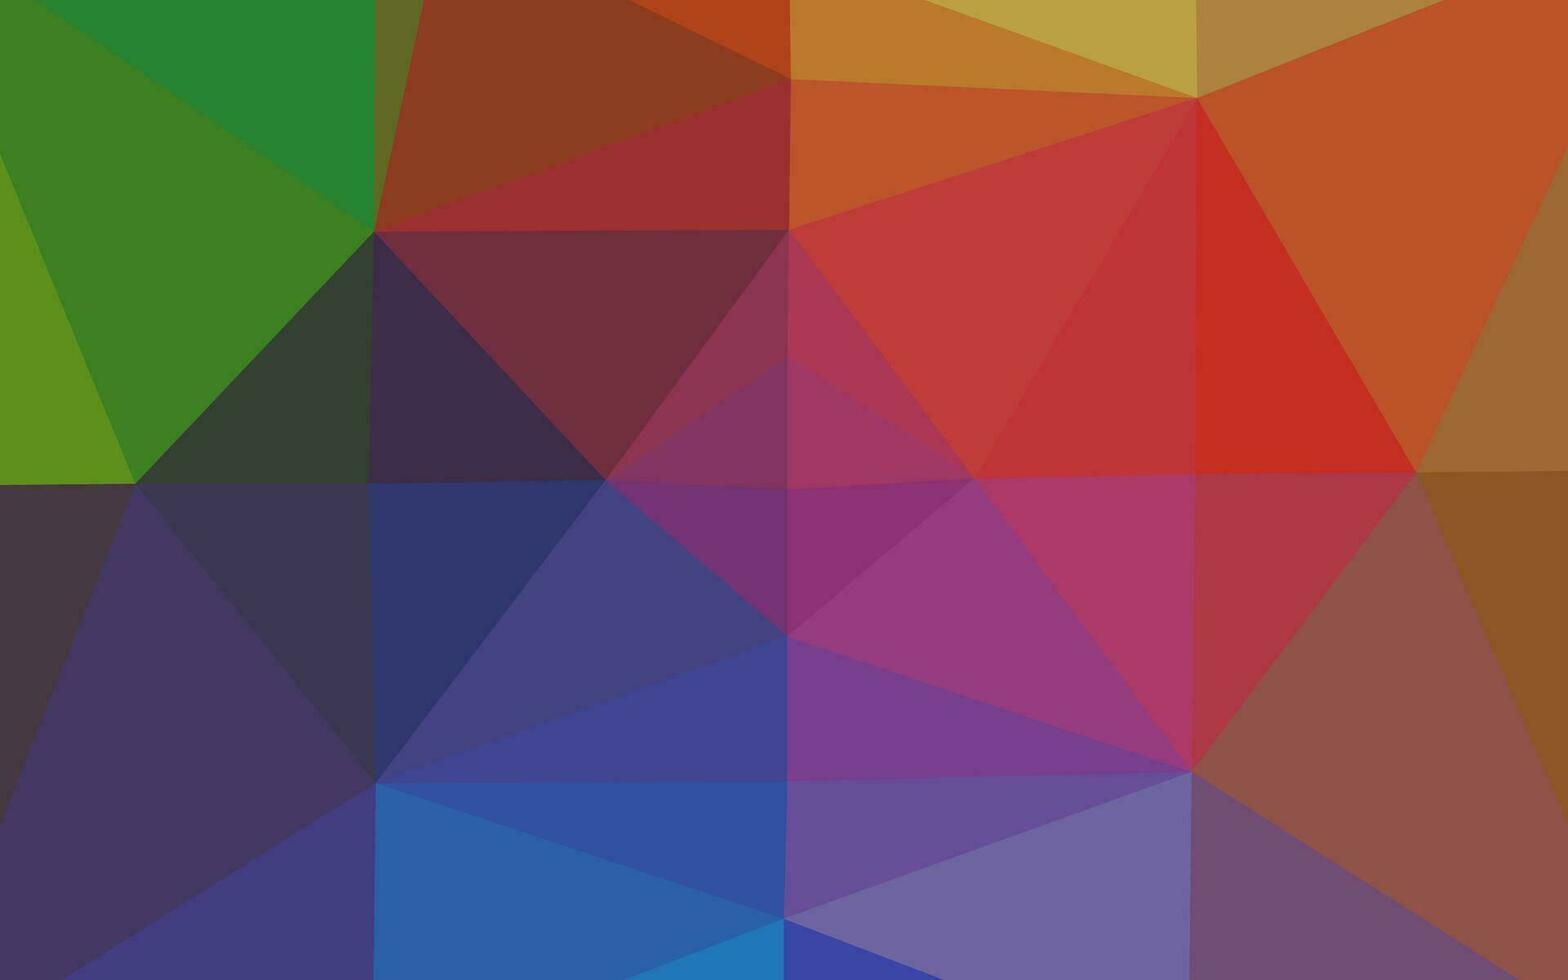 luz multicolor, pano de fundo de mosaico abstrato de vetor de arco-íris.